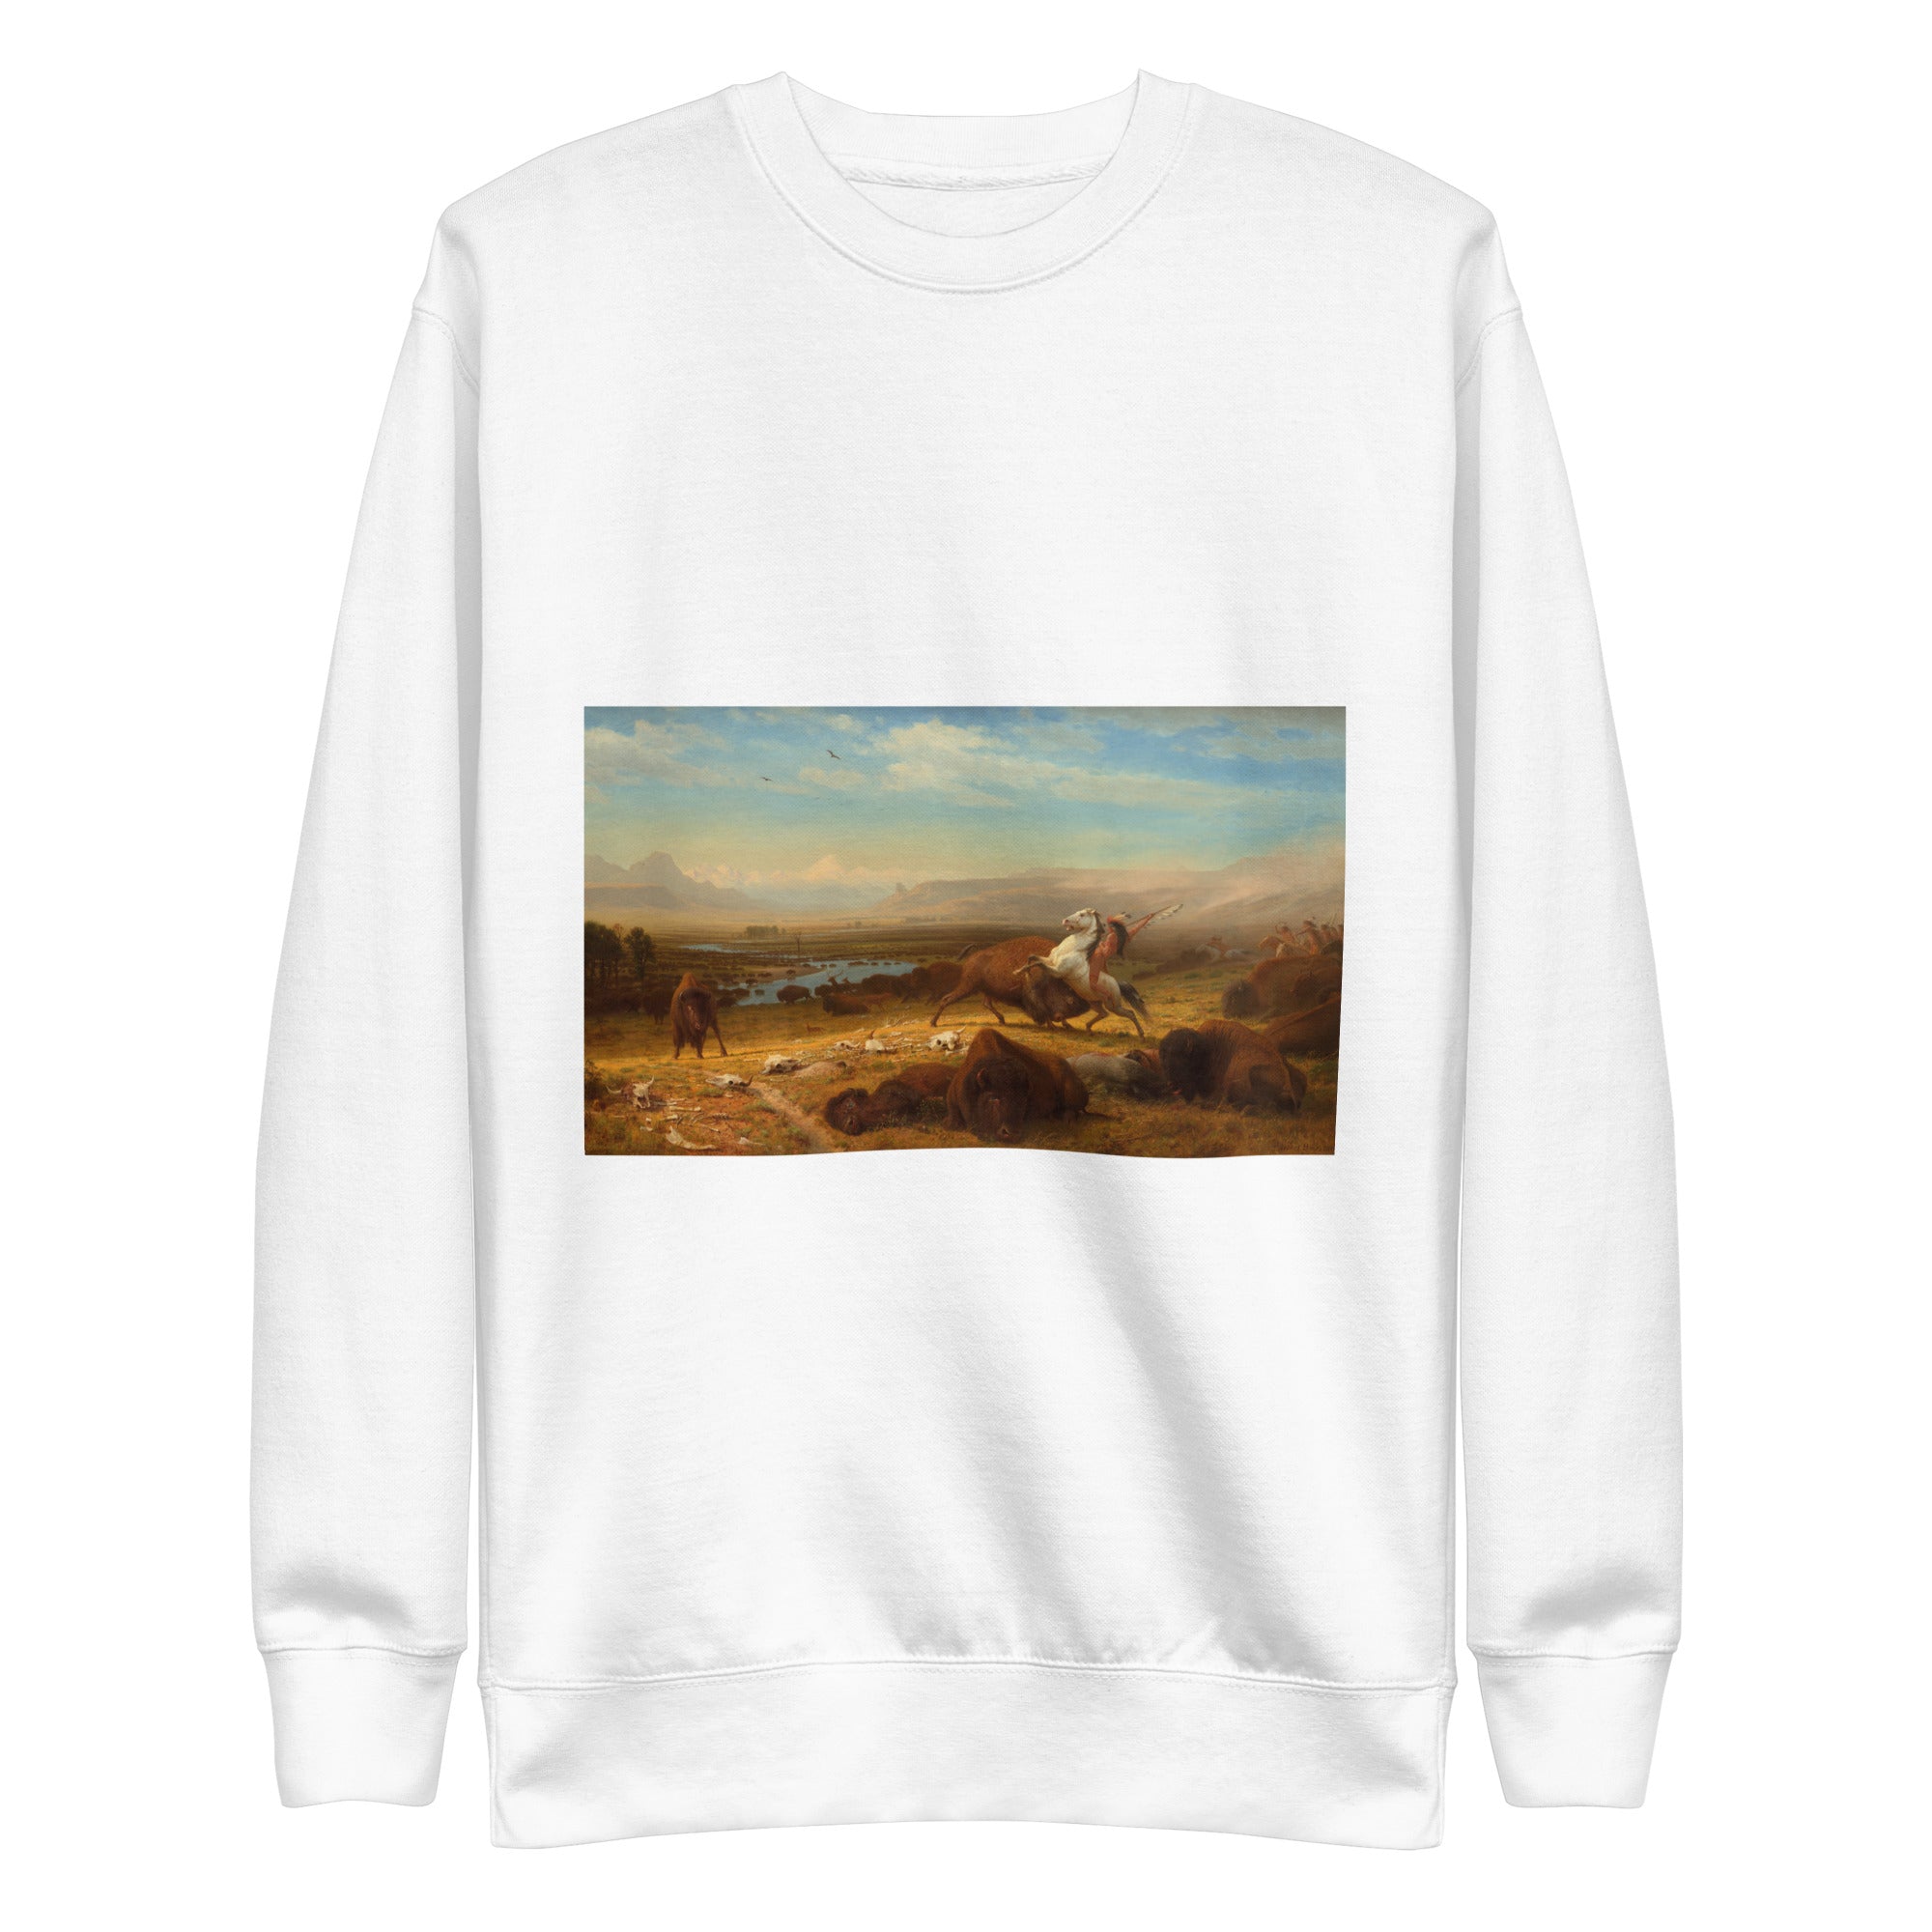 Sweatshirt mit berühmtem Gemälde „The Last of the Buffalo“ von Albert Bierstadt | Premium-Sweatshirt für Unisex